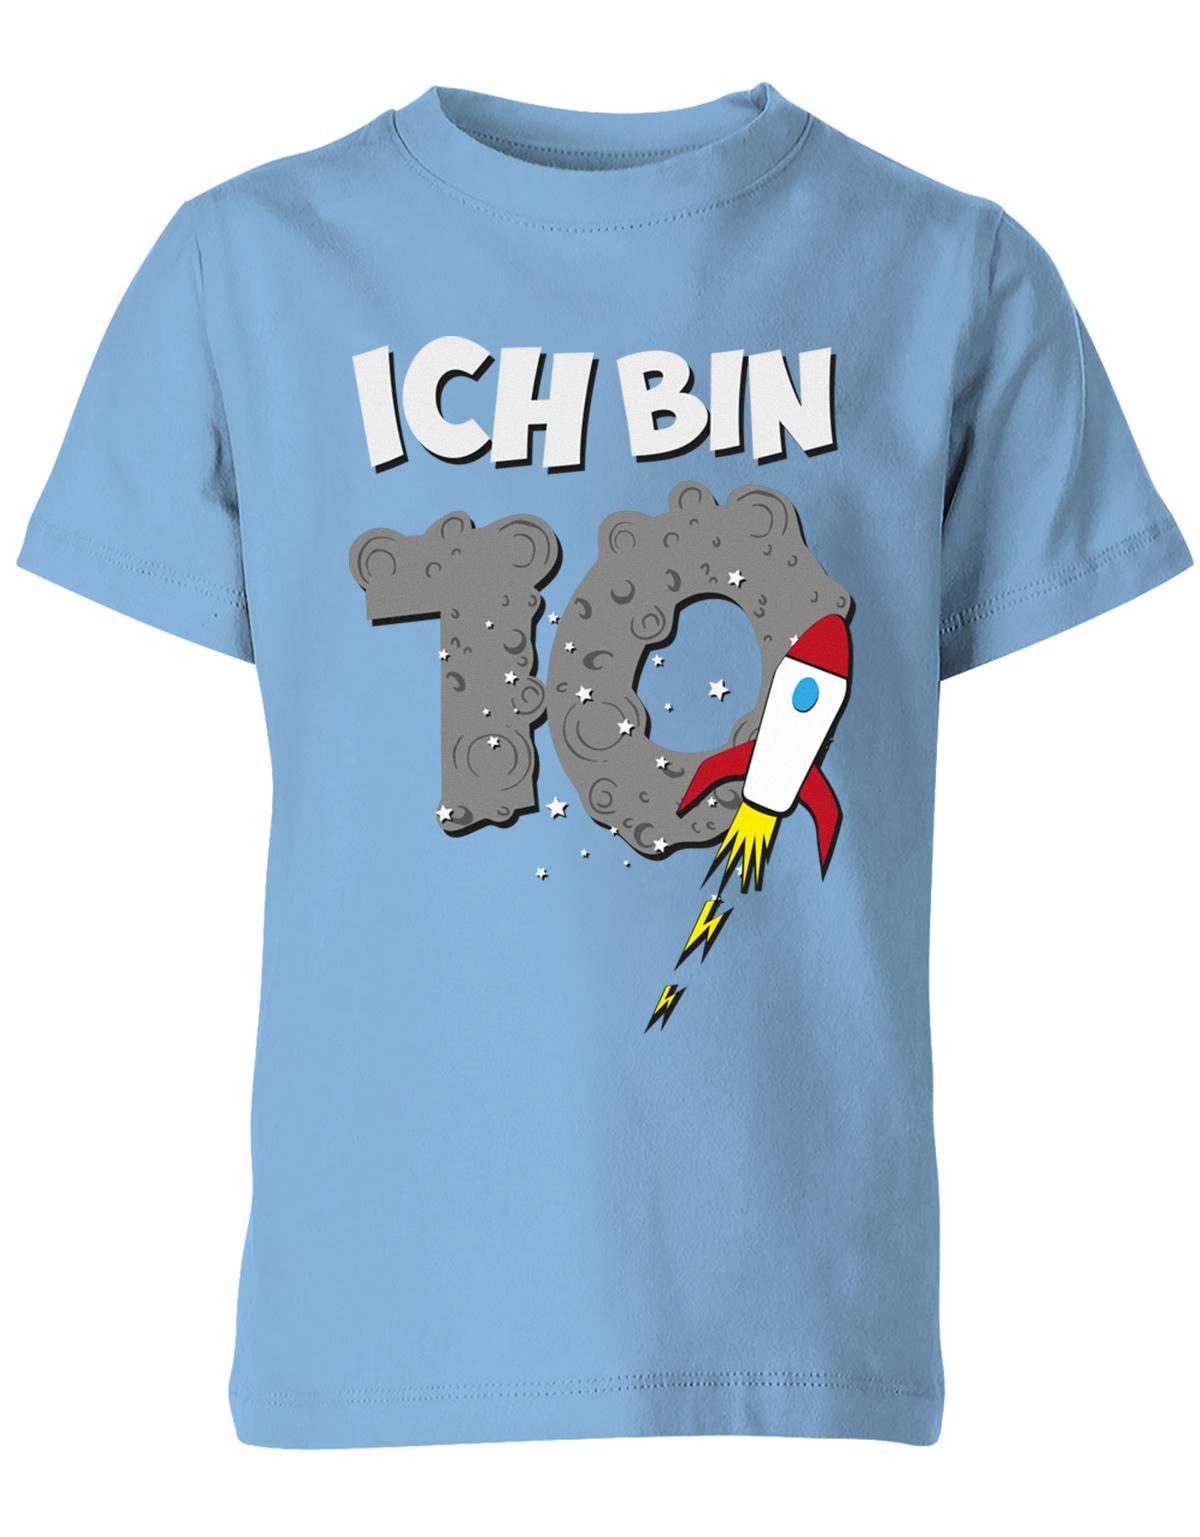 ich-bin-10-weltraum-rakete-planet-geburtstag-kinder-shirt-hellblau